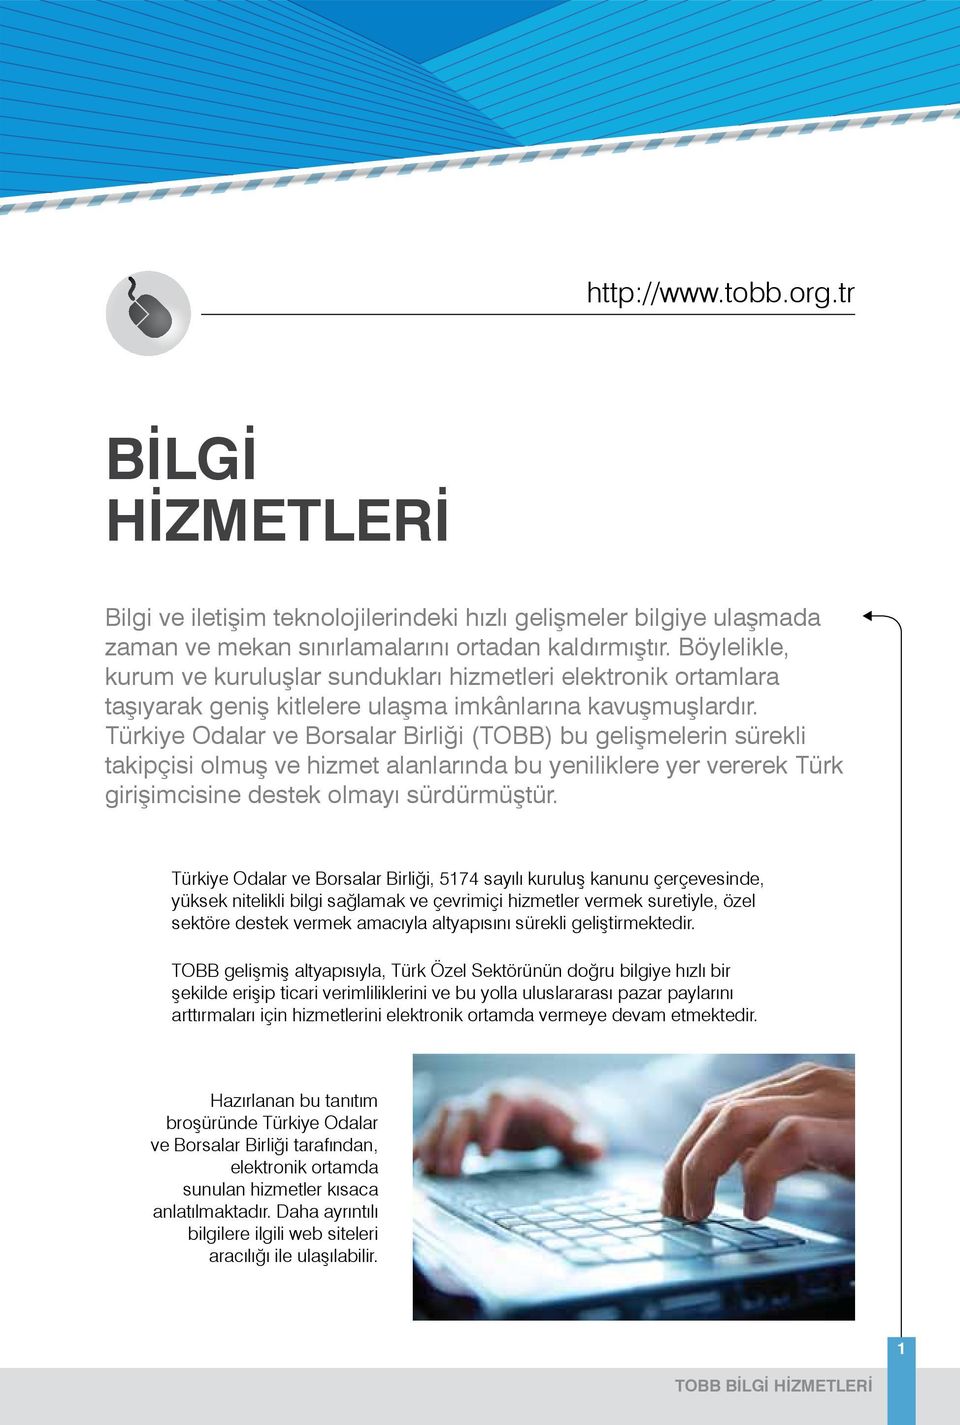 Türkiye Odalar ve Borsalar Birliği (TOBB) bu gelişmelerin sürekli takipçisi olmuş ve hizmet alanlarında bu yeniliklere yer vererek Türk girişimcisine destek olmayı sürdürmüştür.